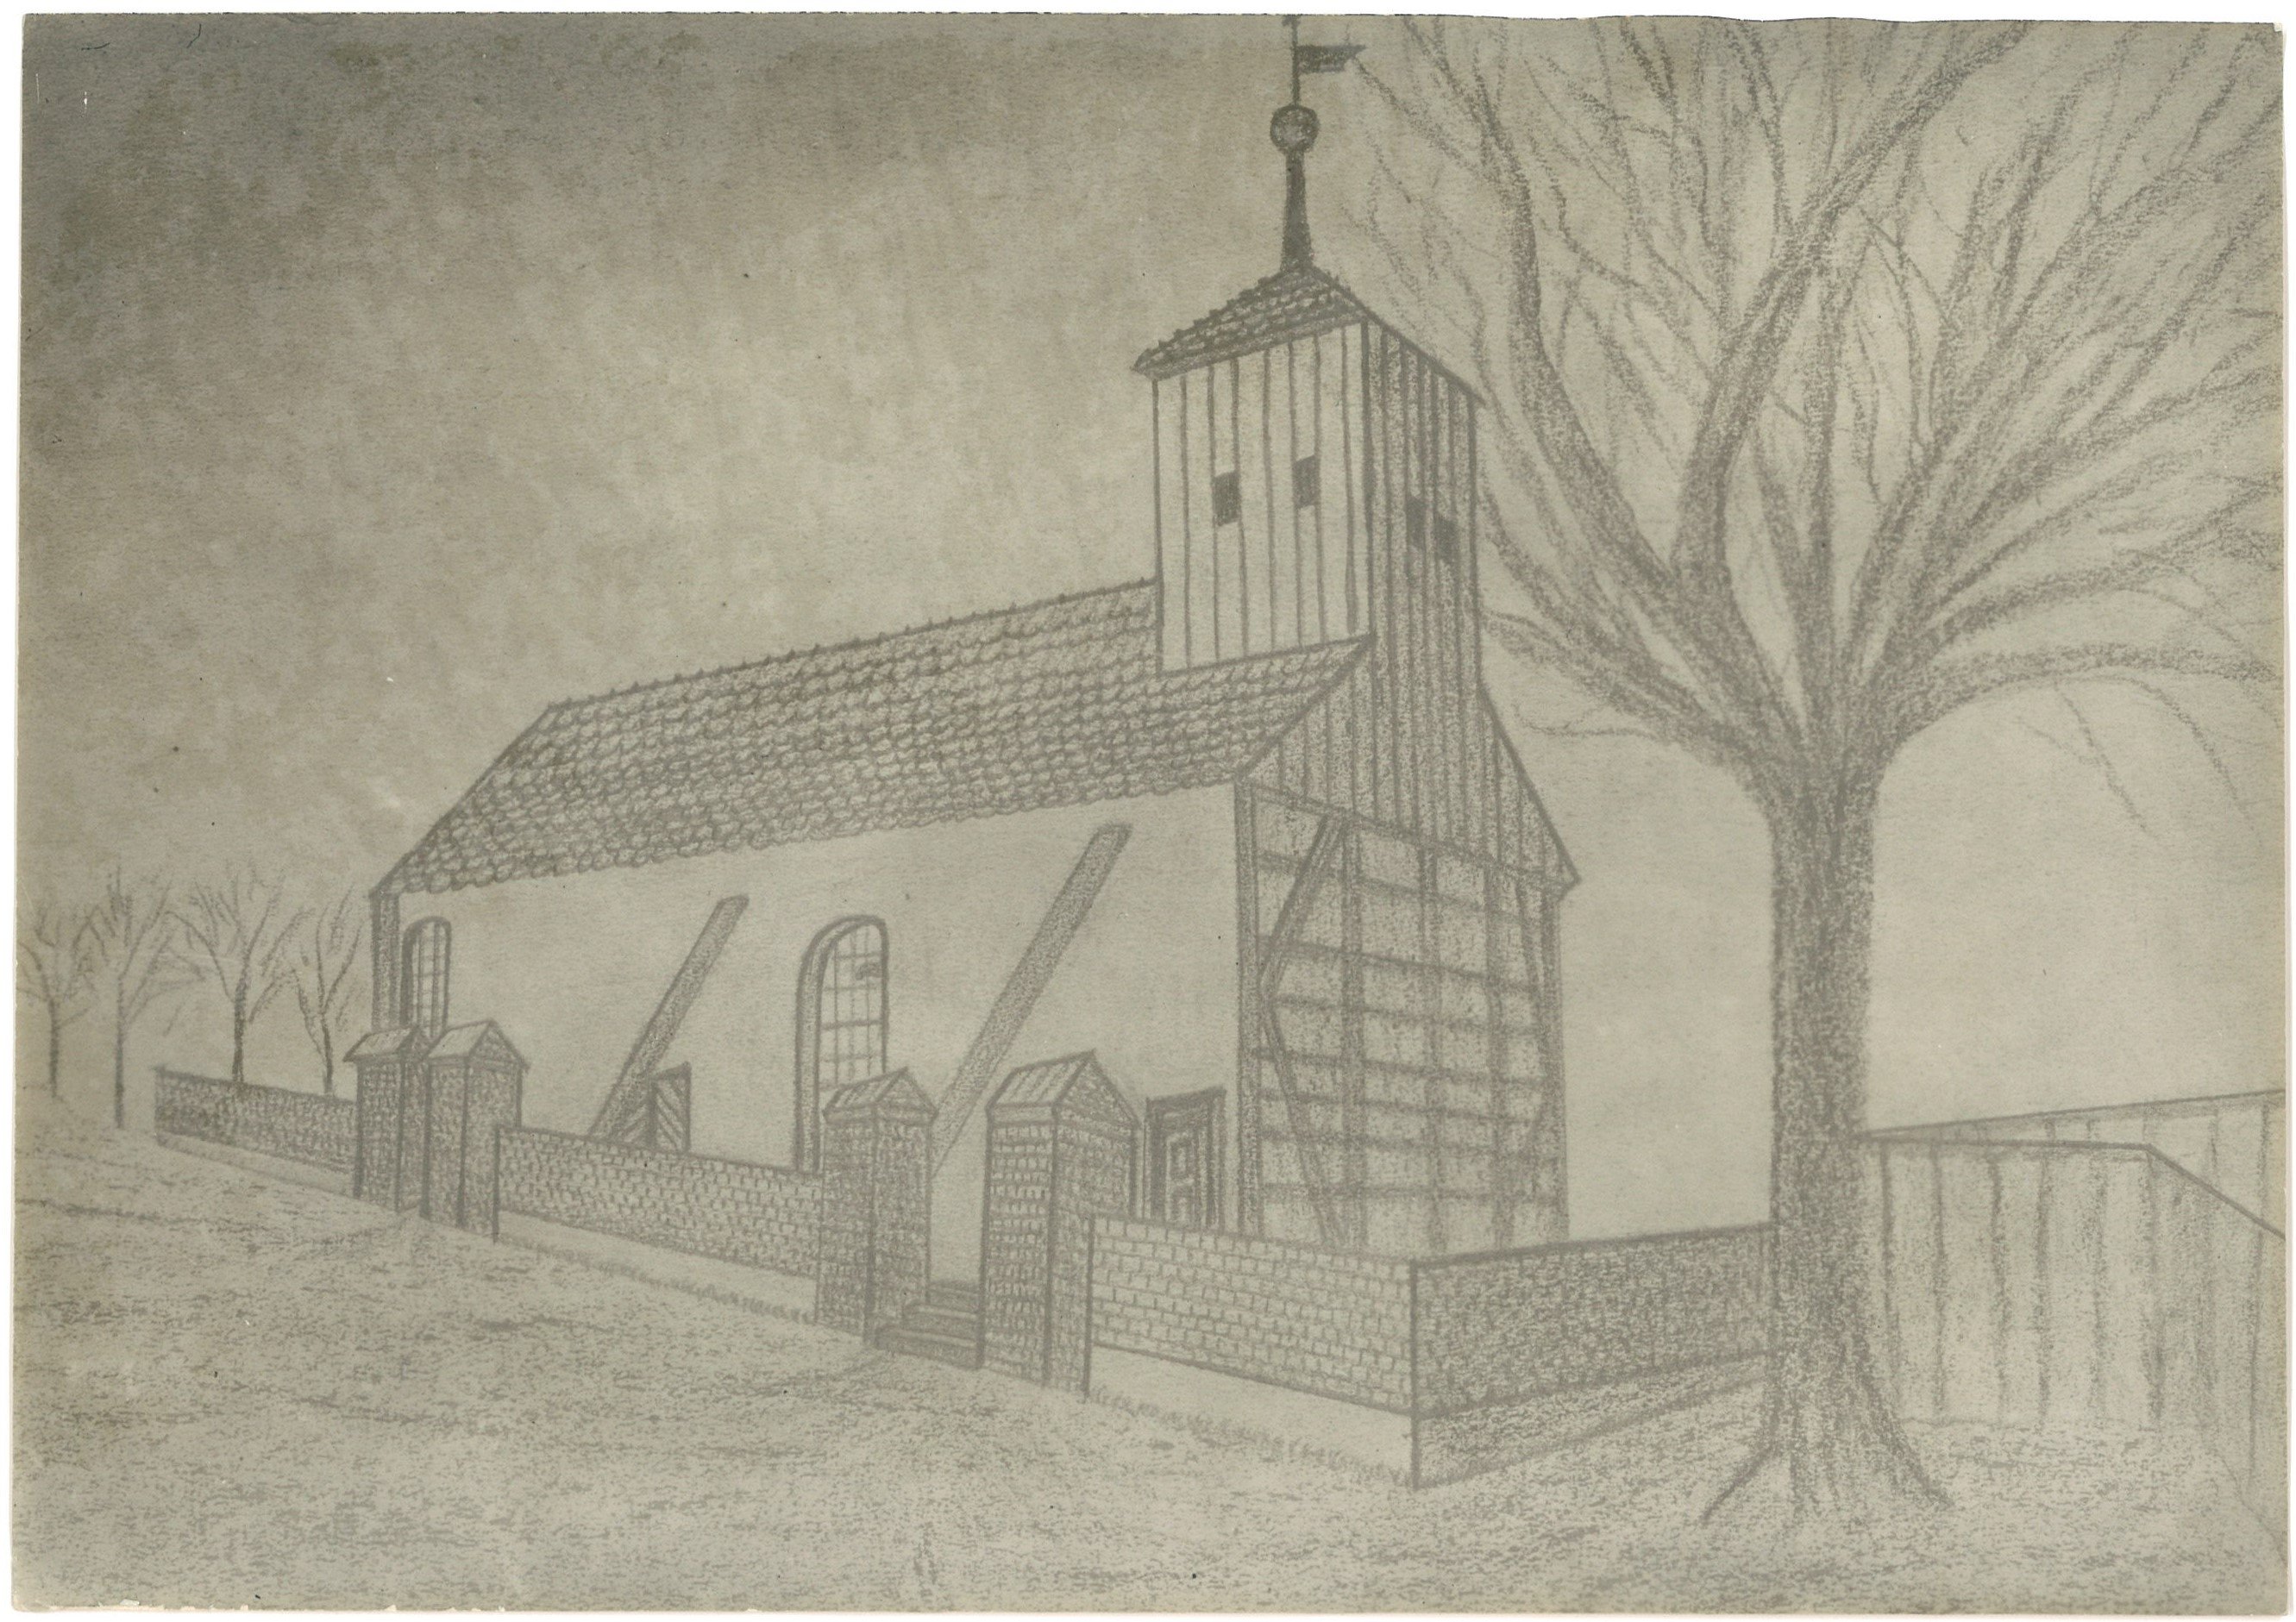 Niebel (Kr. Zauch-Belzig): Alte Dorfkirche von Nordwesten (Zeichnung) (Landesgeschichtliche Vereinigung für die Mark Brandenburg e.V., Archiv CC BY)